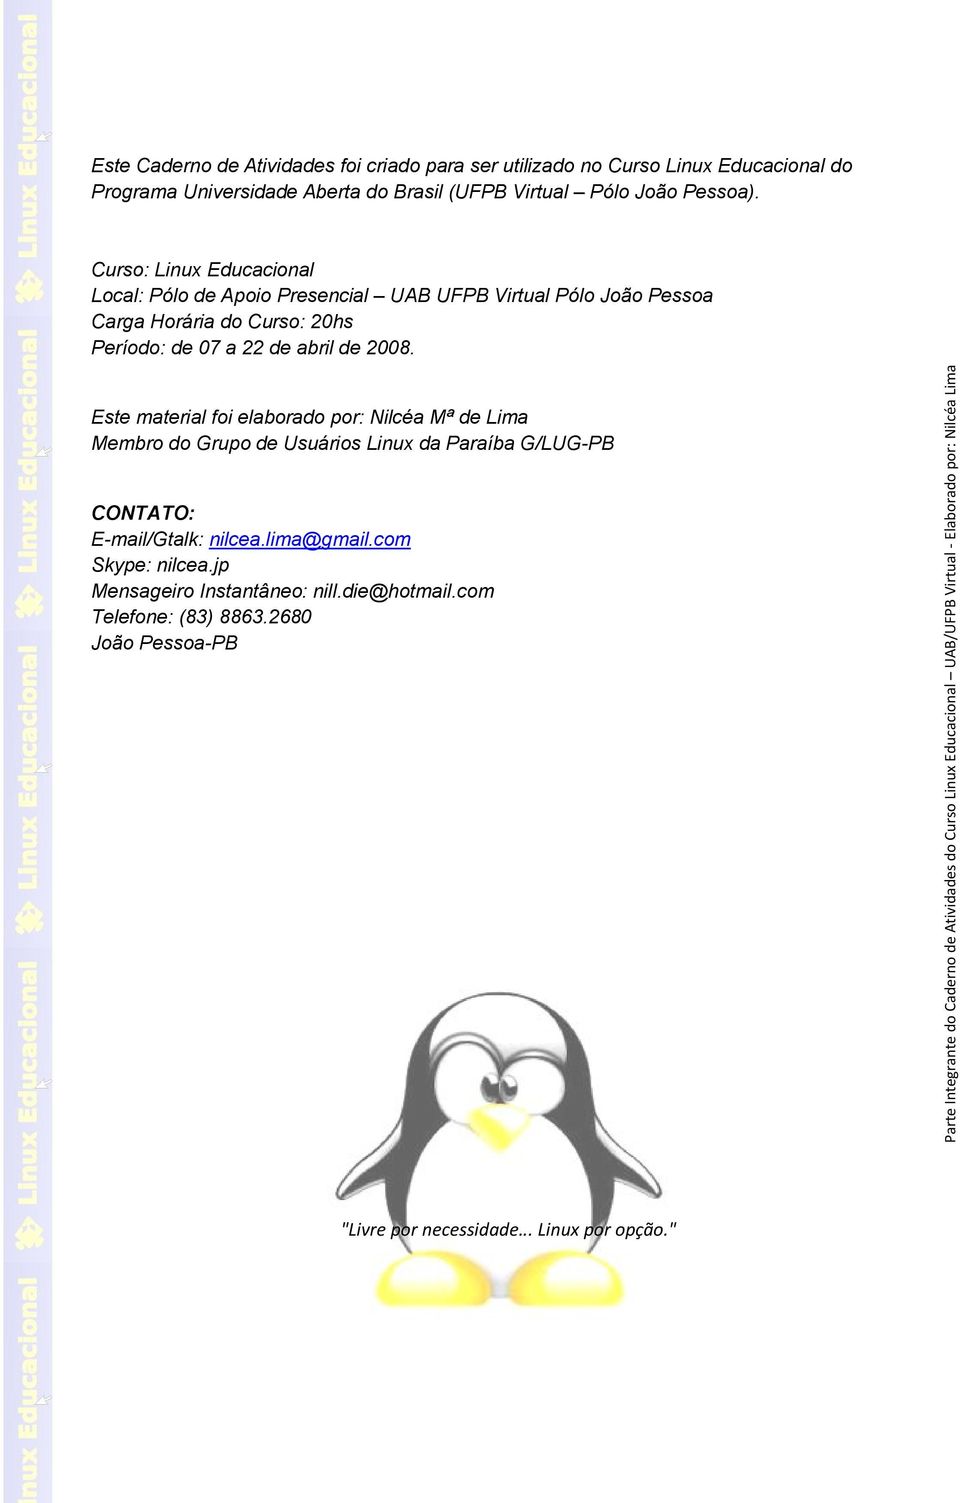 17 Curso: Linux Educacional Local: Pólo de Apoio Presencial UAB UFPB Virtual Pólo João Pessoa Carga Horária do Curso: 20hs Período: de 07 a 22 de abril